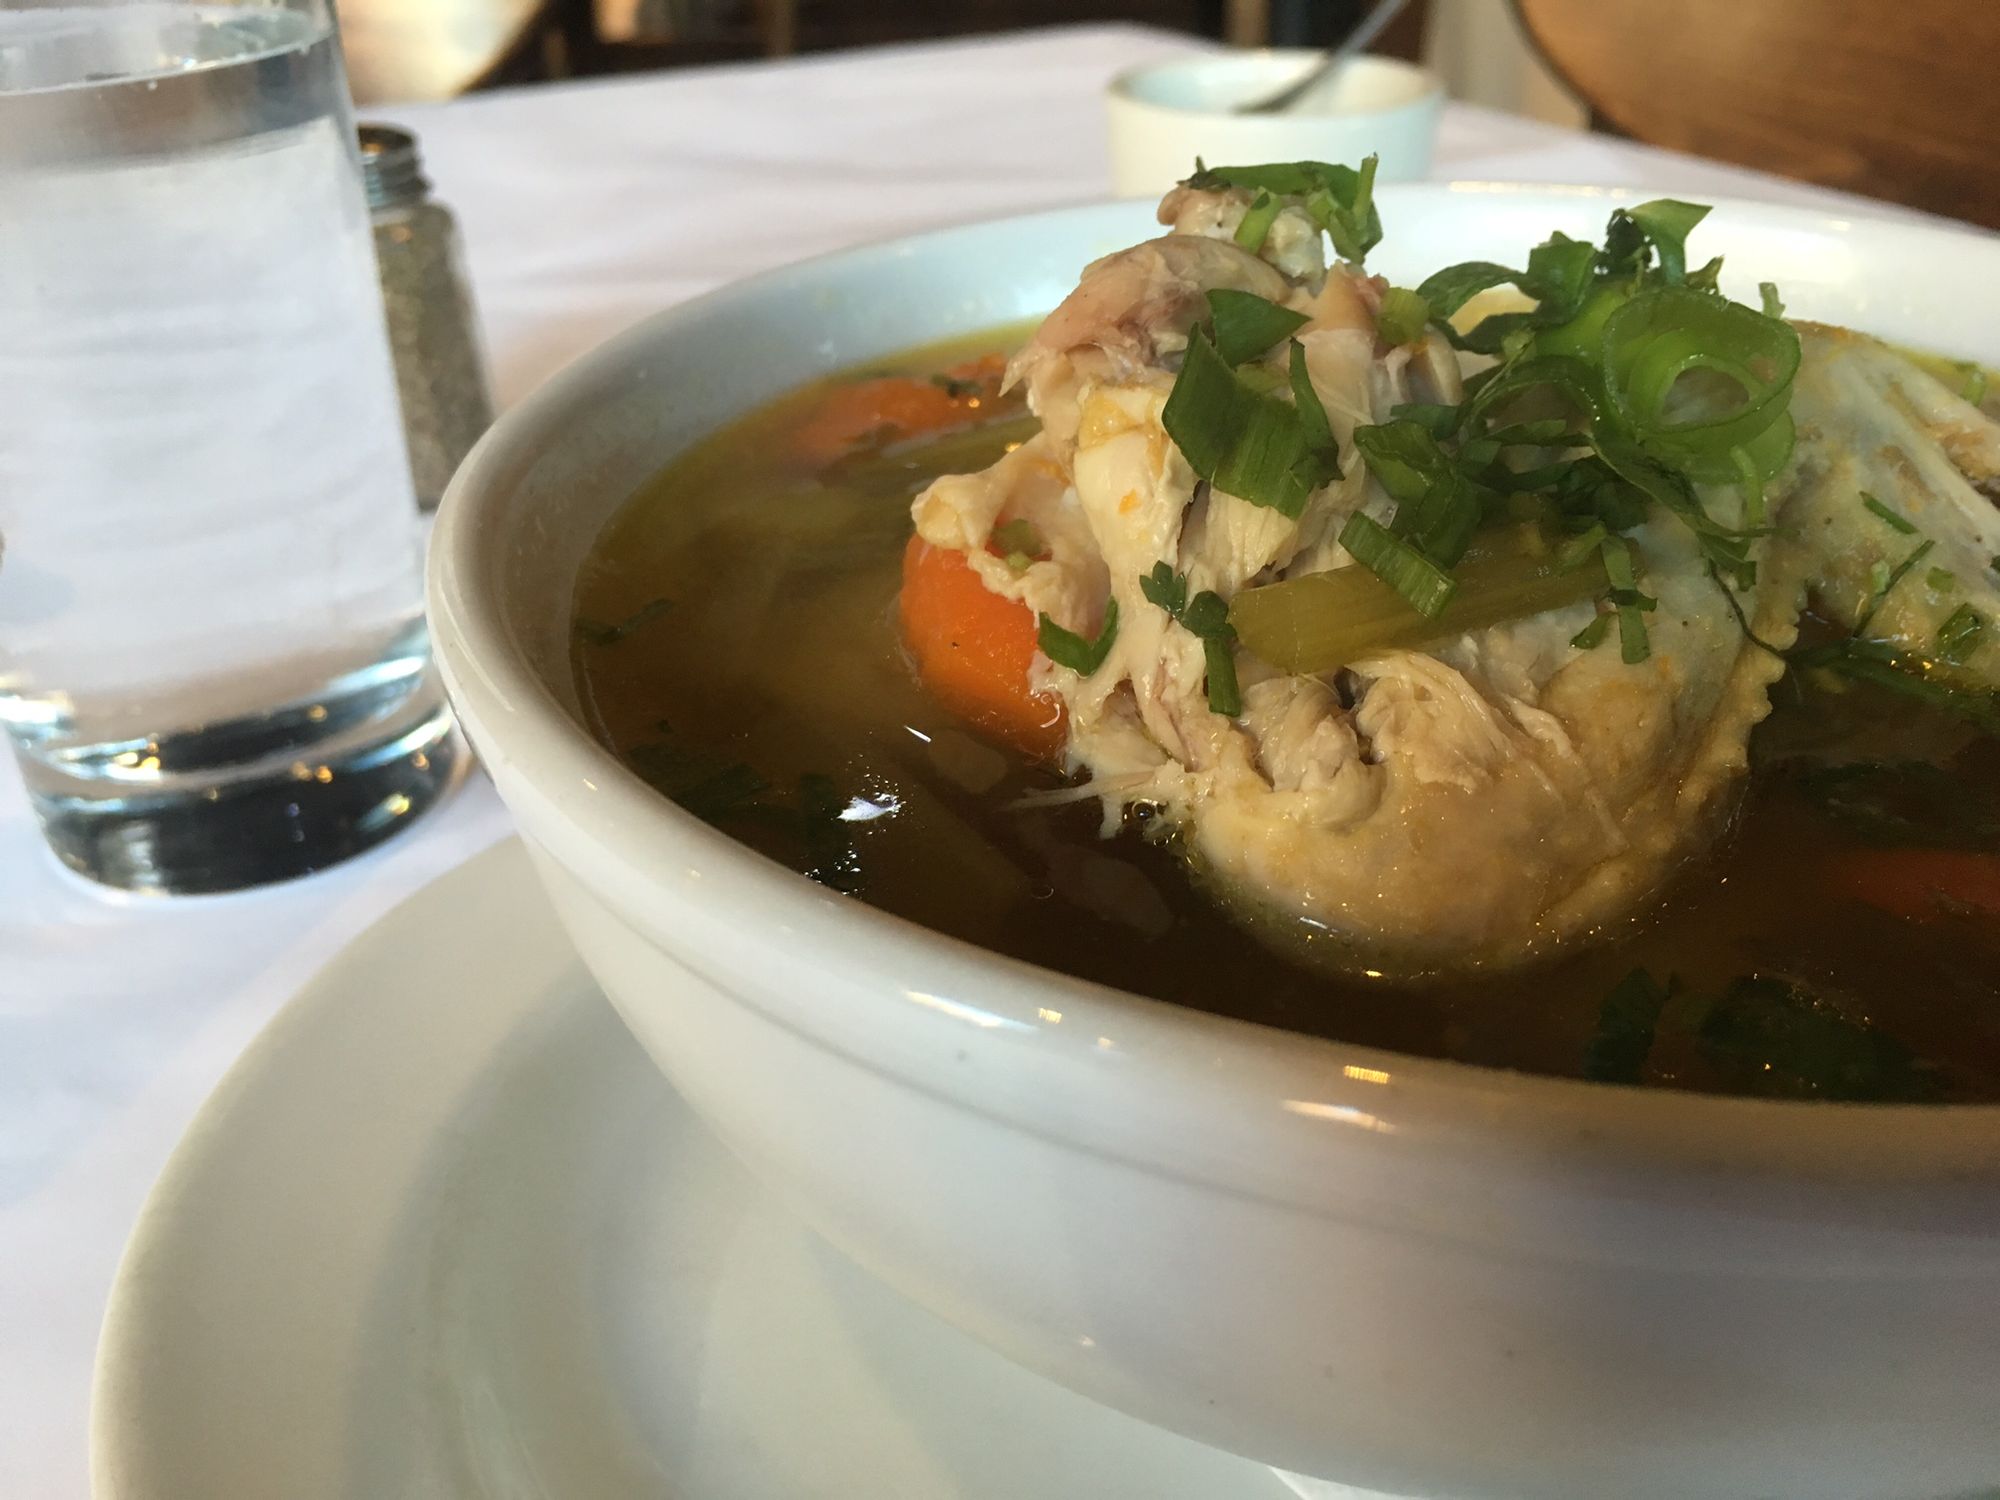 Chicken soup at Pio Pio. (Photo by Rachel Silberstein/Bensonhurst Bean)